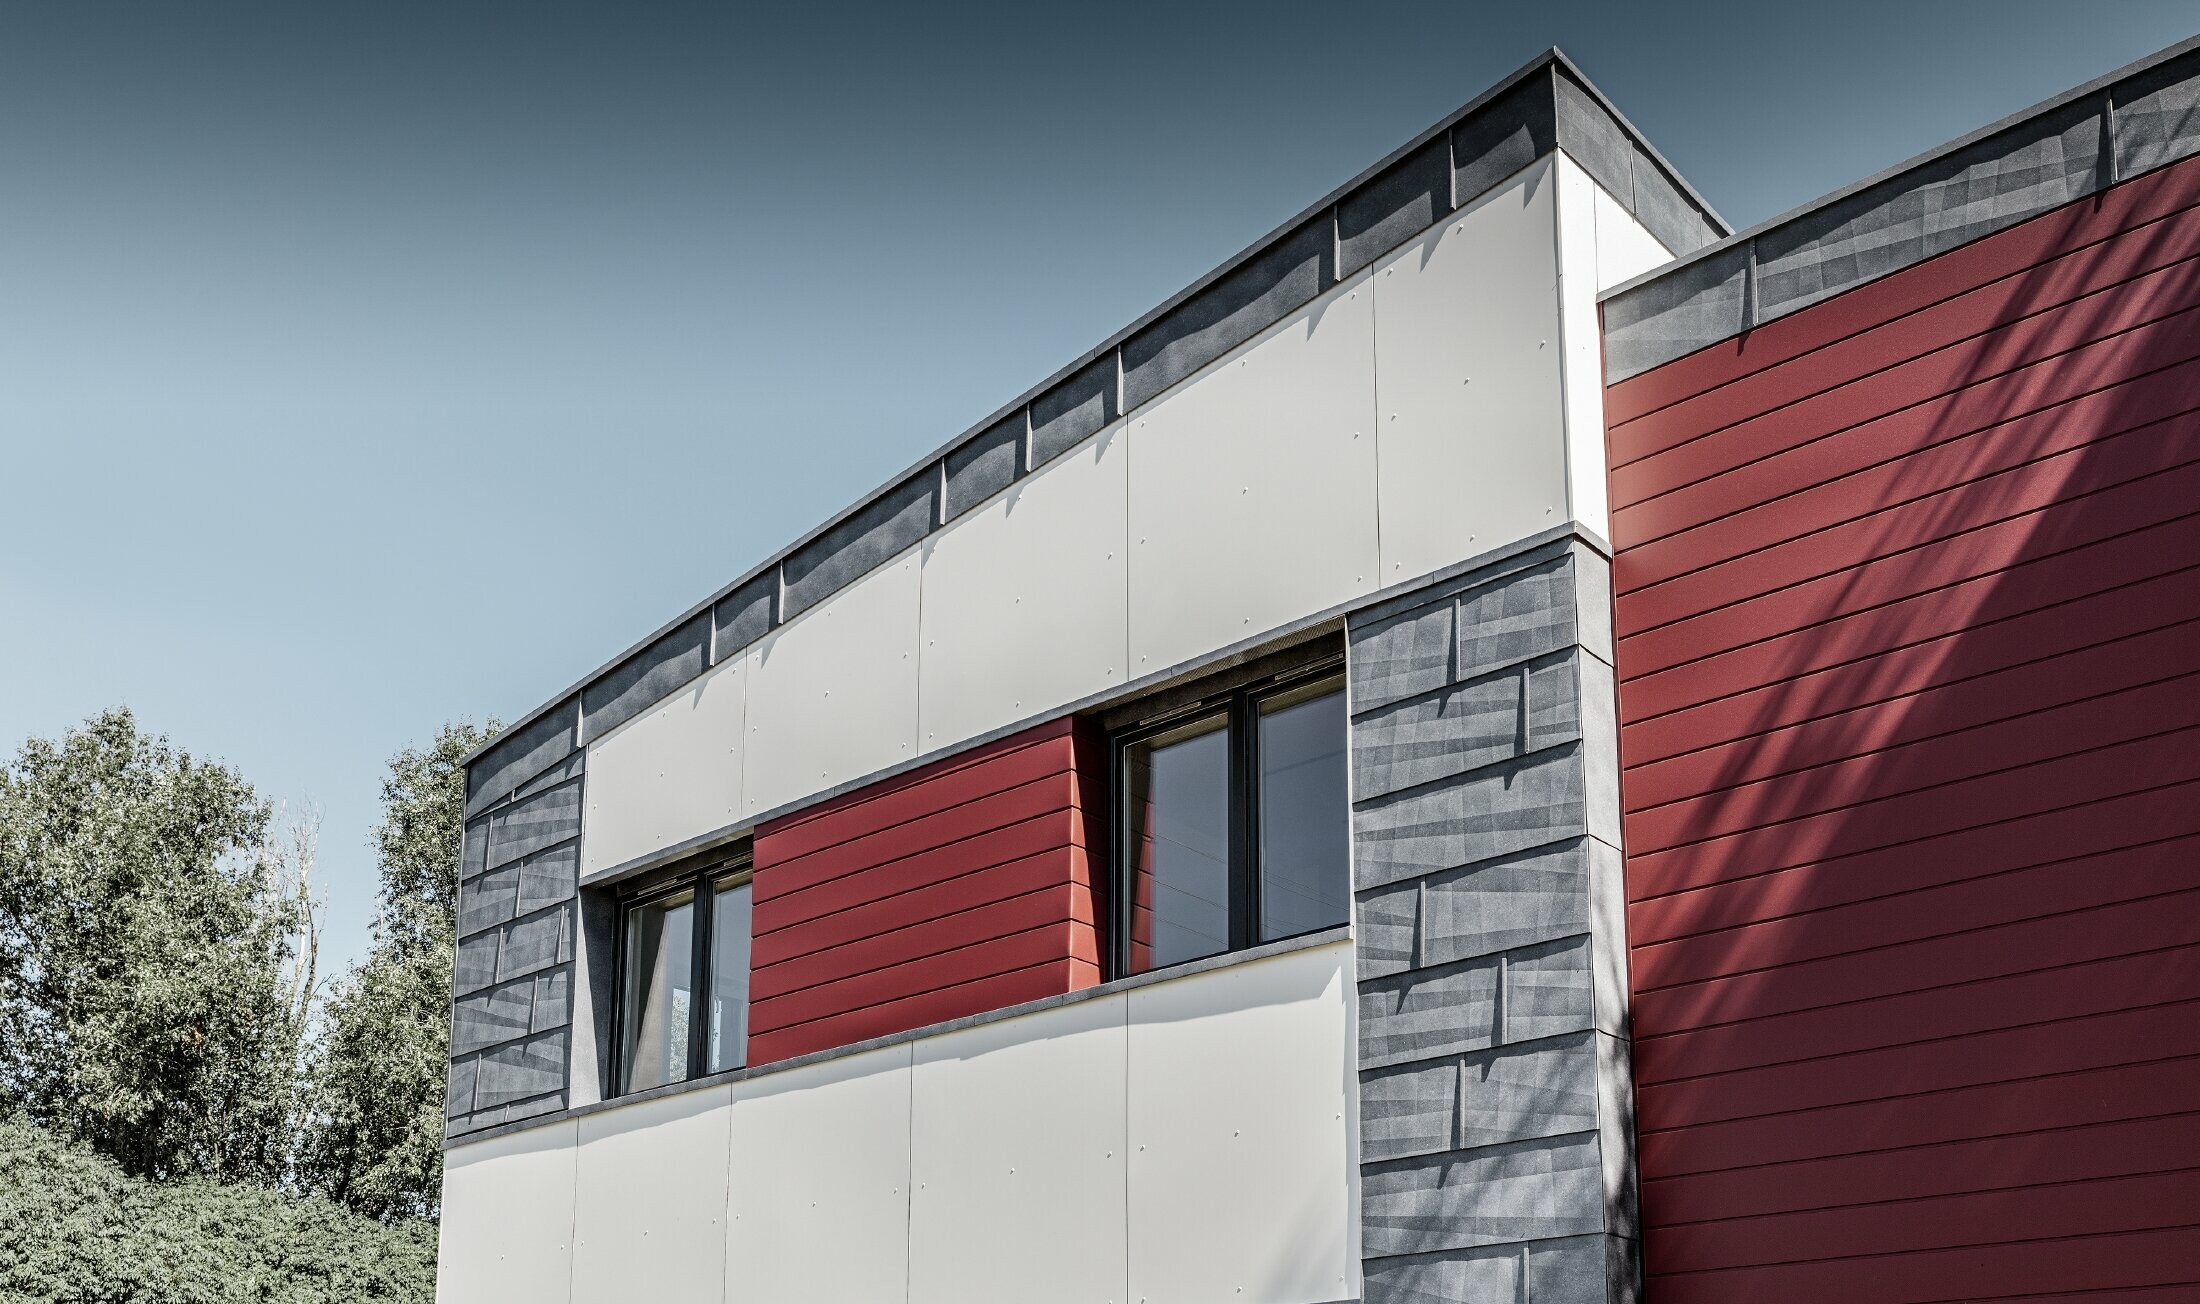 Nowoczesny budynek biurowy z dzieloną elewacją w kolorach czerwonym, kamiennym szarym i białym, wykonaną z aluminiowego sidingu, paneli elewacyjnych FX.12 i aluminiowej płyty kompozytowej PREFA